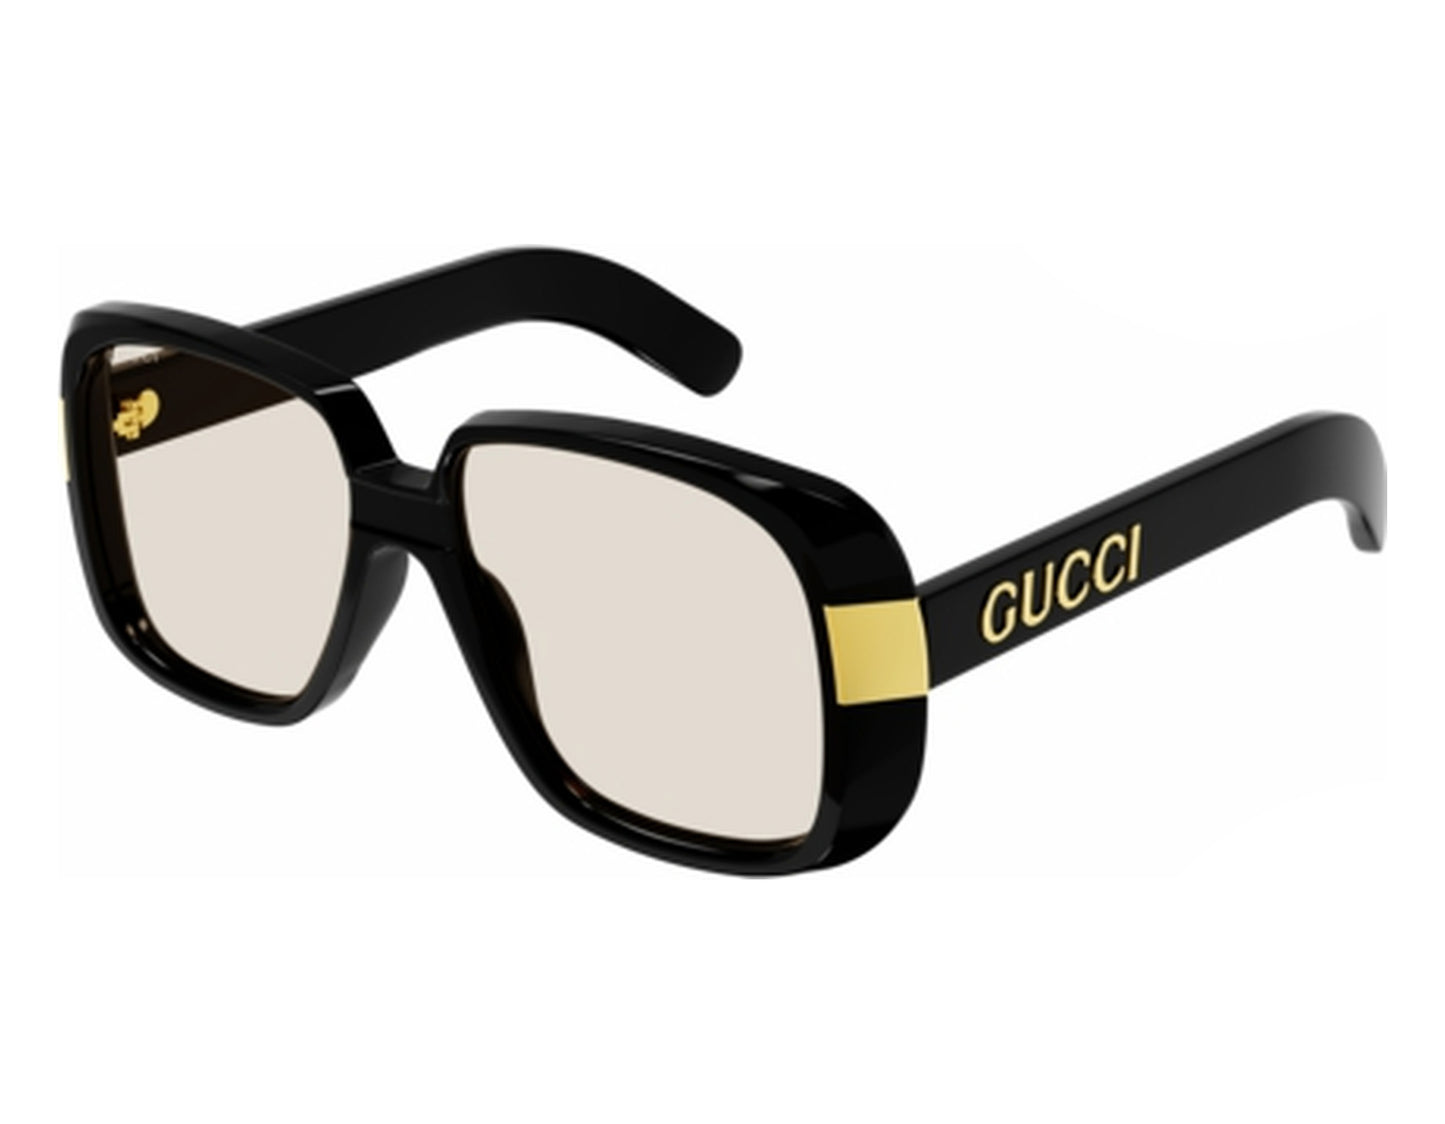 Gucci GG0318S-006 51mm New Sunglasses